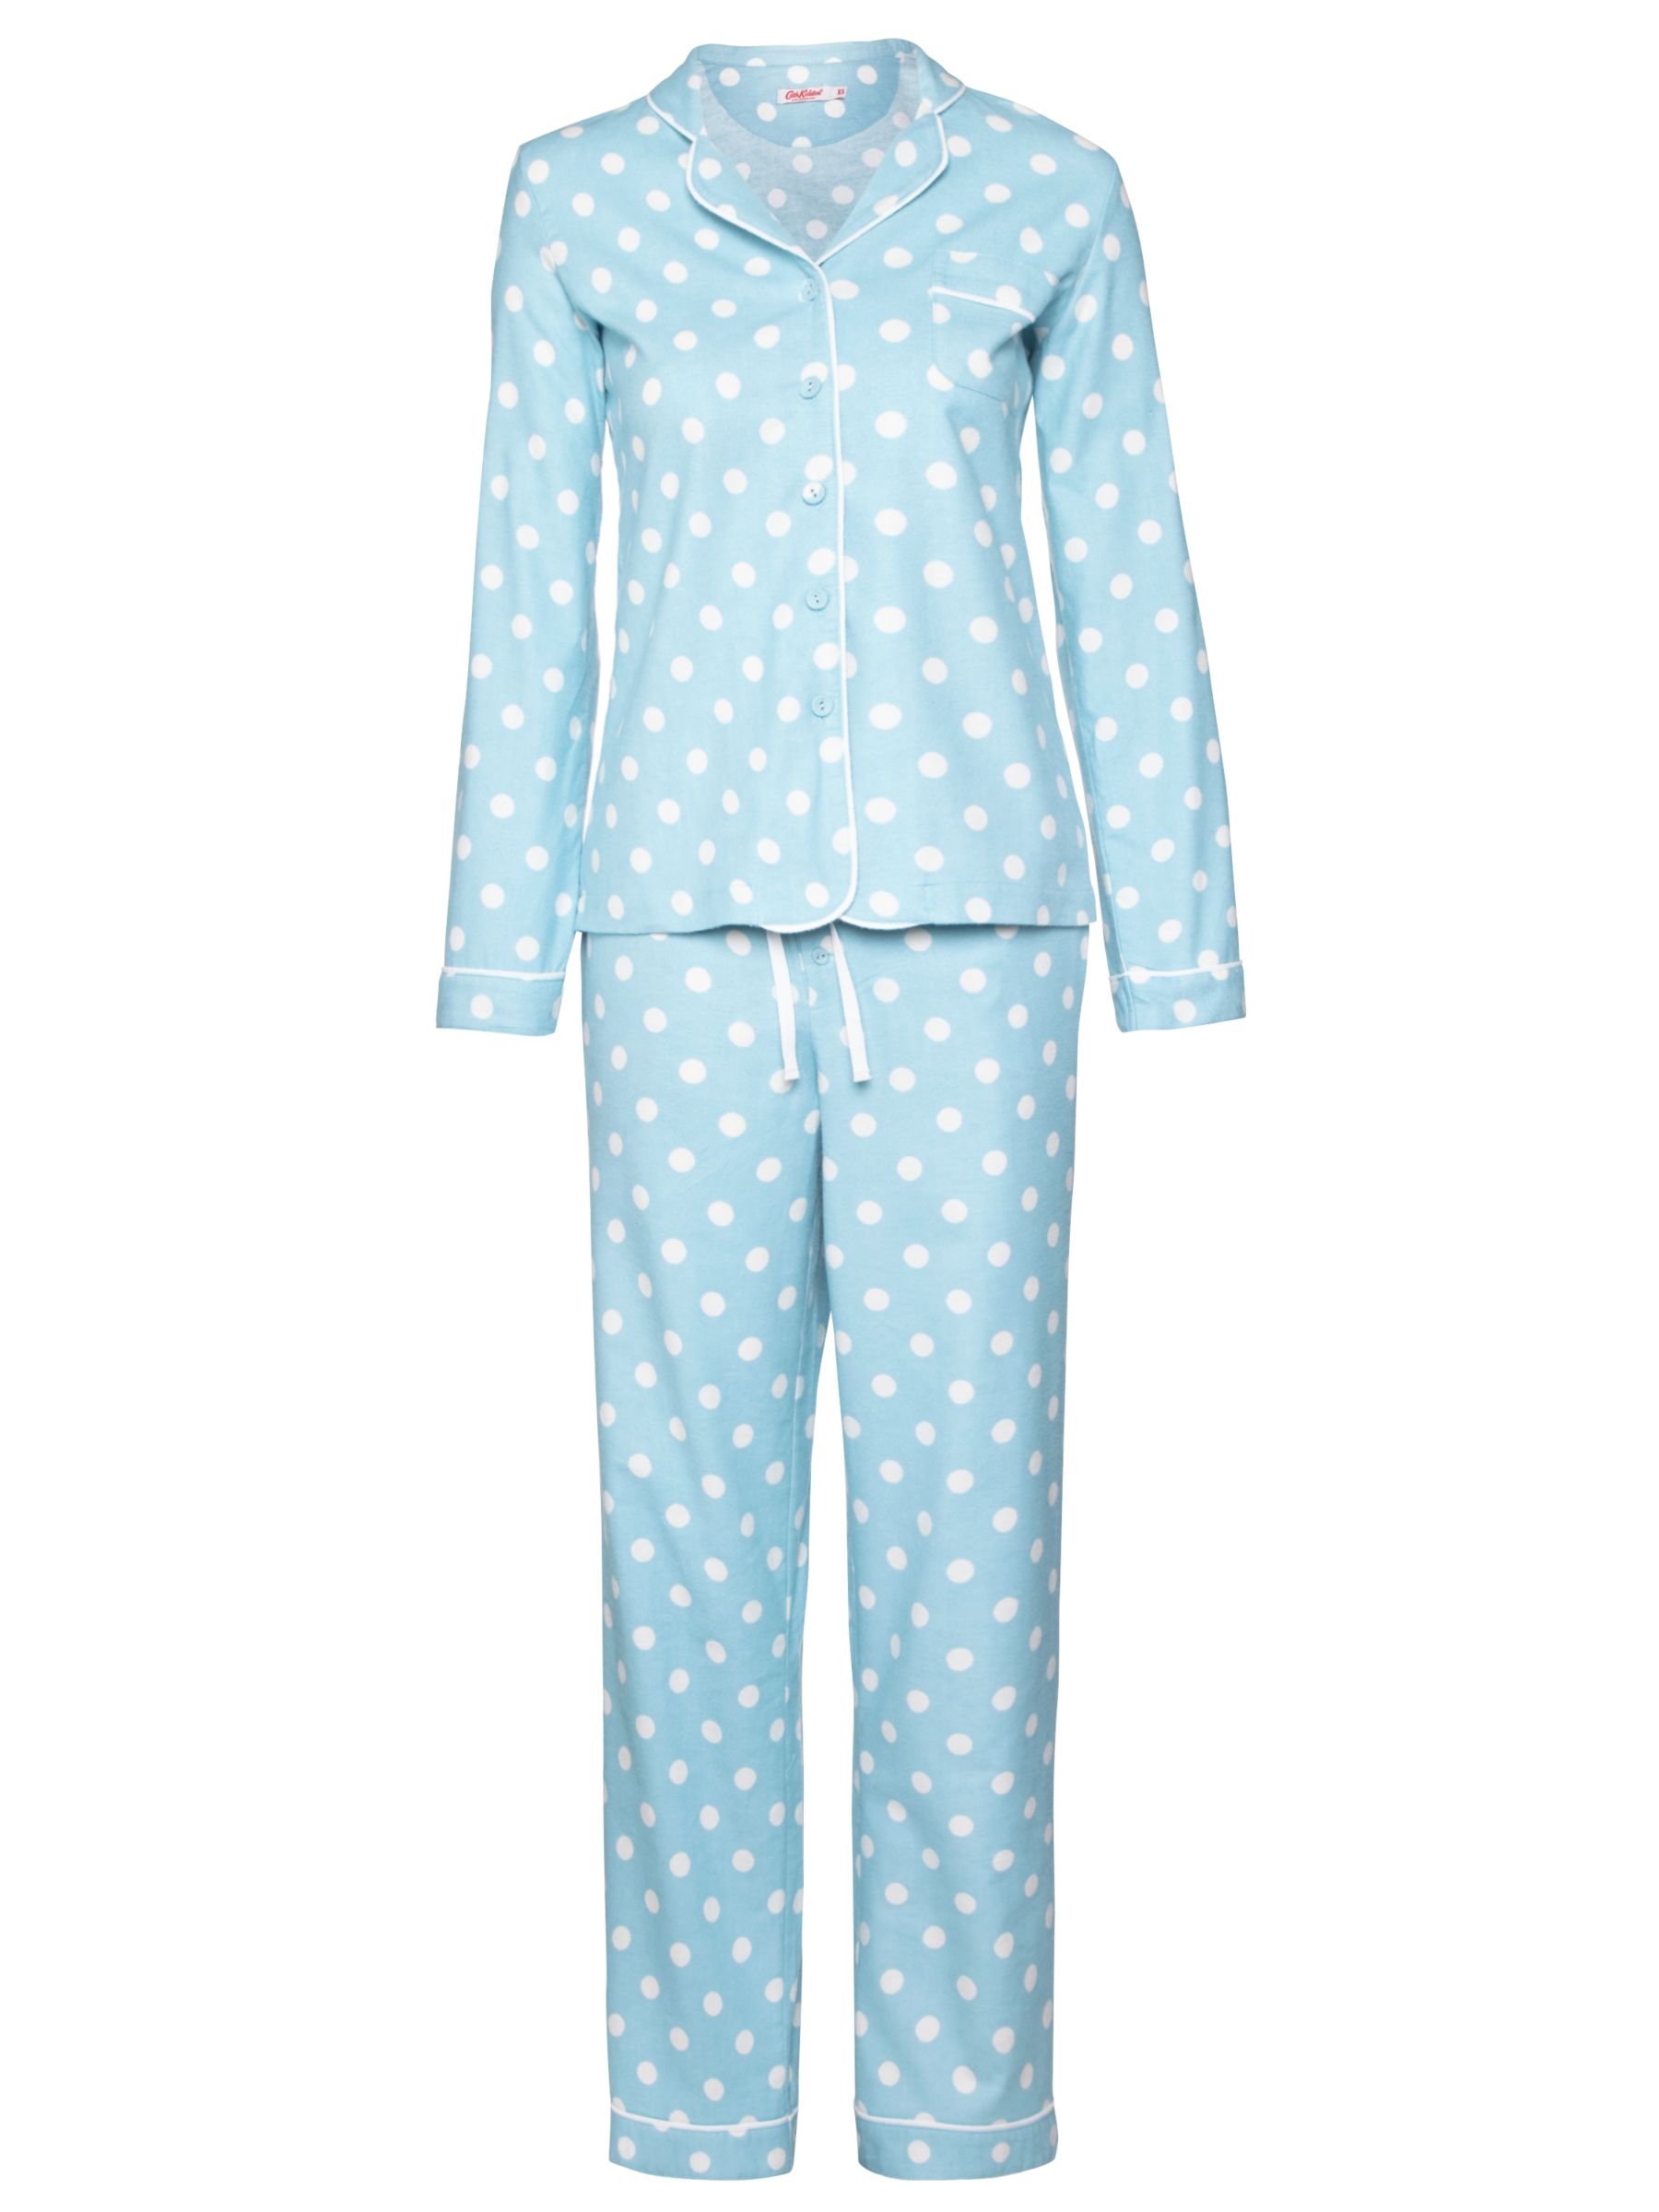 cath kidston womens pyjamas